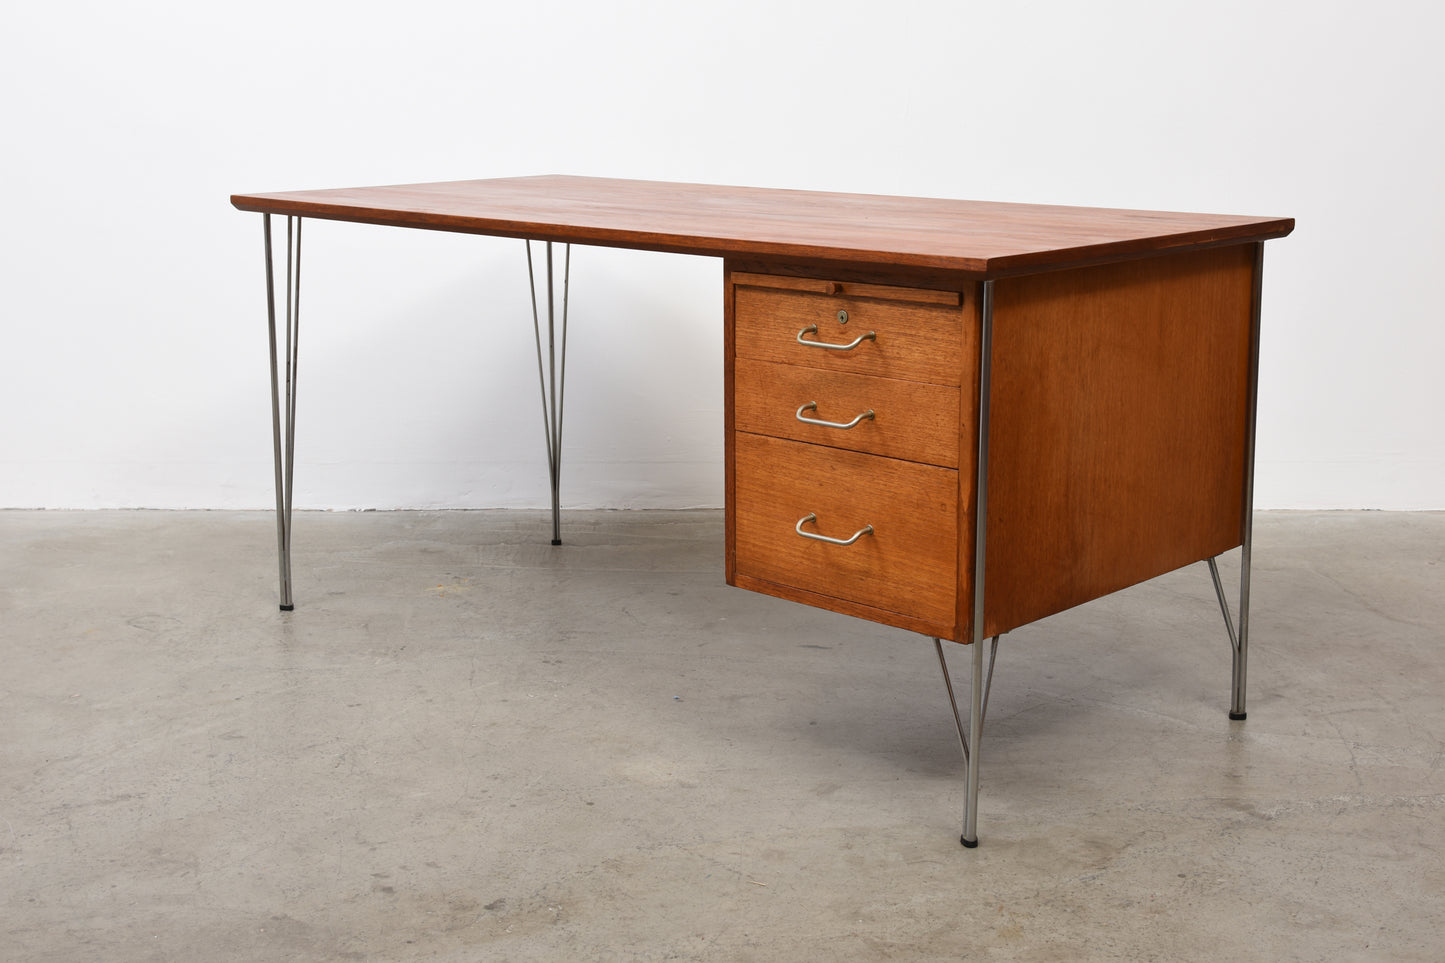 1950s teak desk by Heinrich Roepstorff